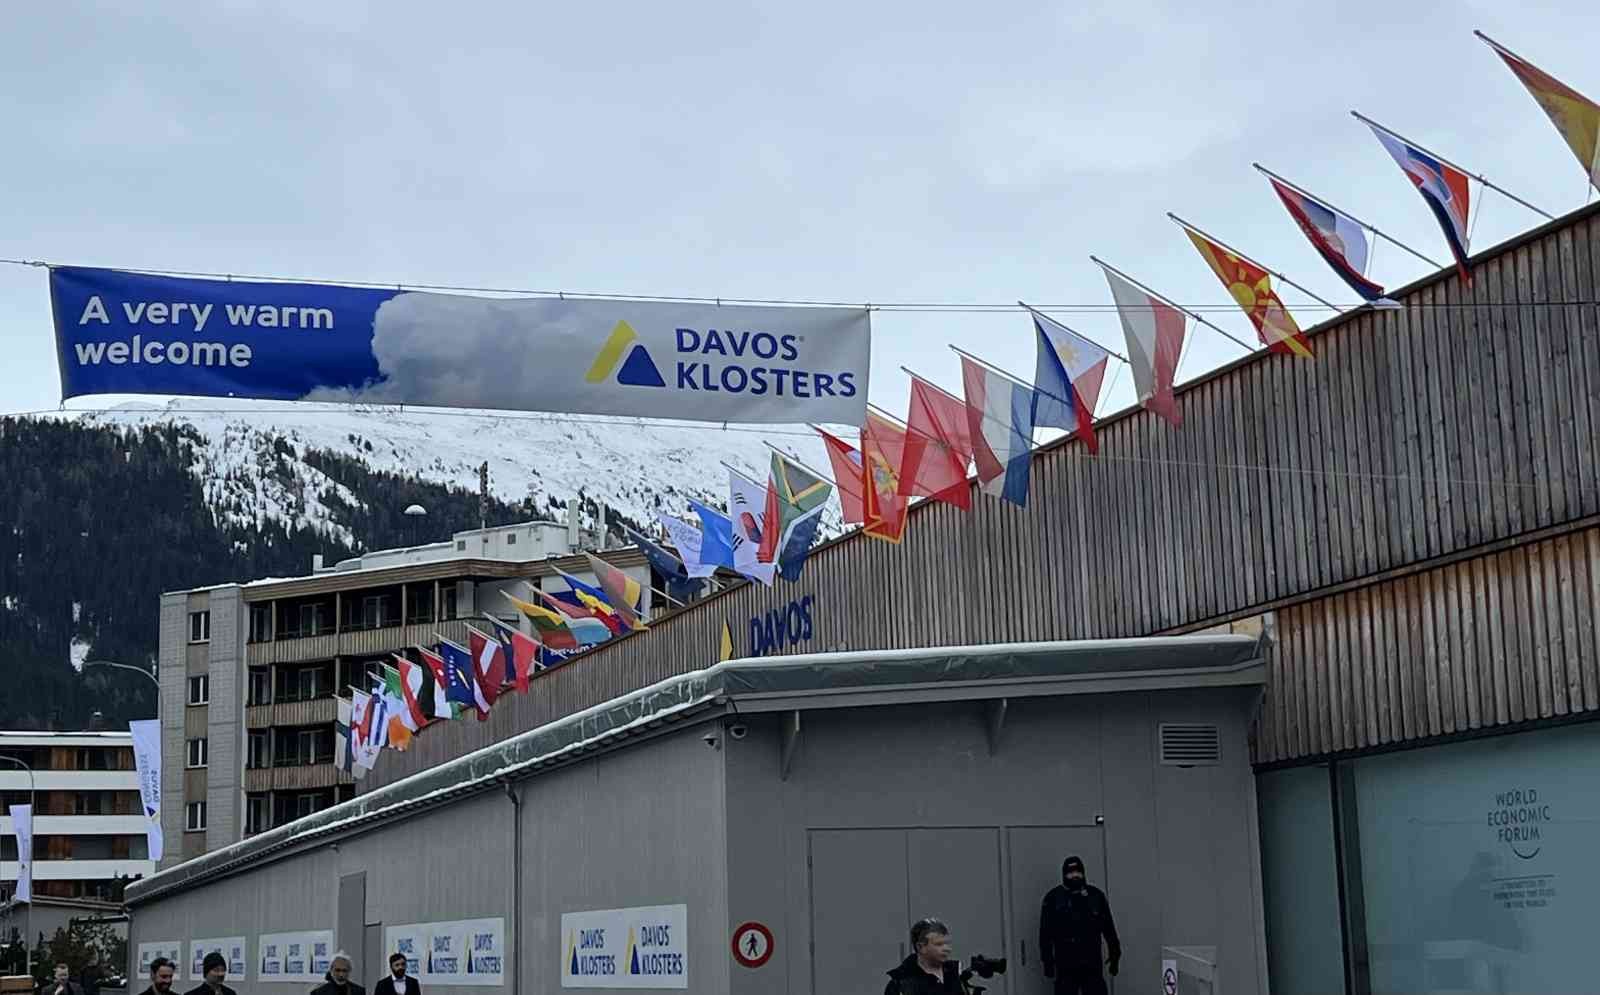 Dünya Ekonomik Forumu yarın Davos’ta başlıyor